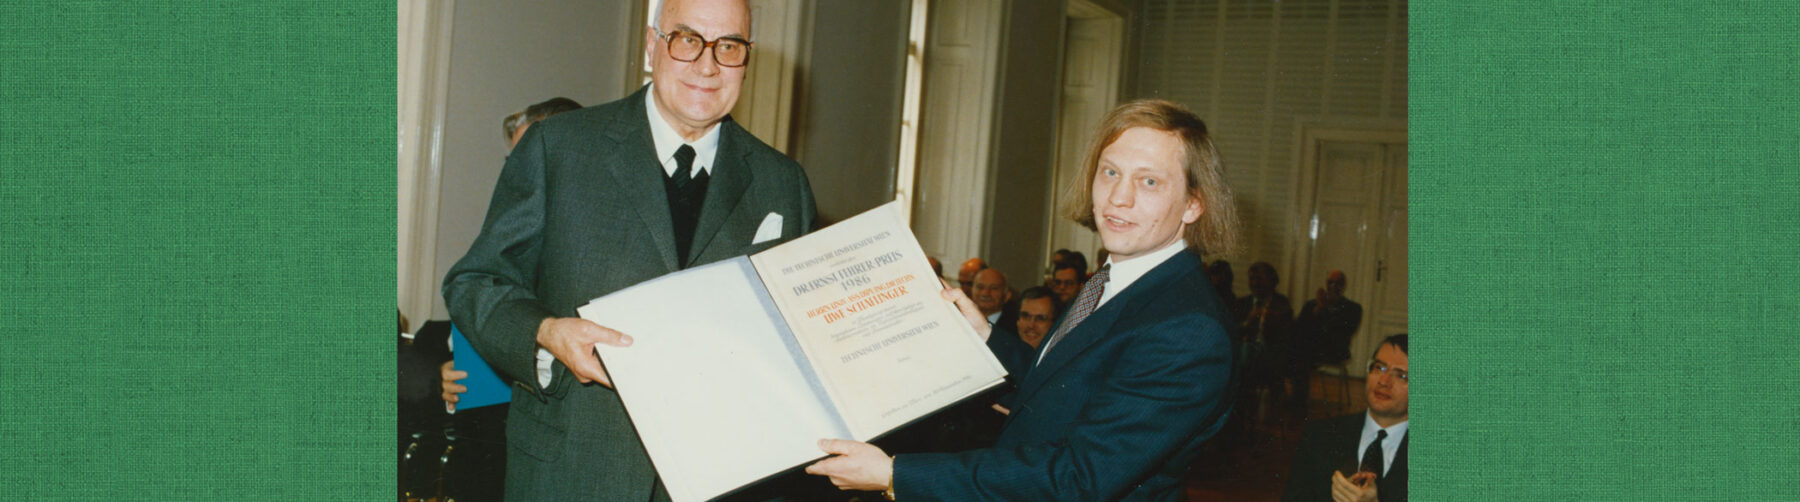 Dr. Fehrer und Uwe Schaflinger halten die Verleihungsurkunde